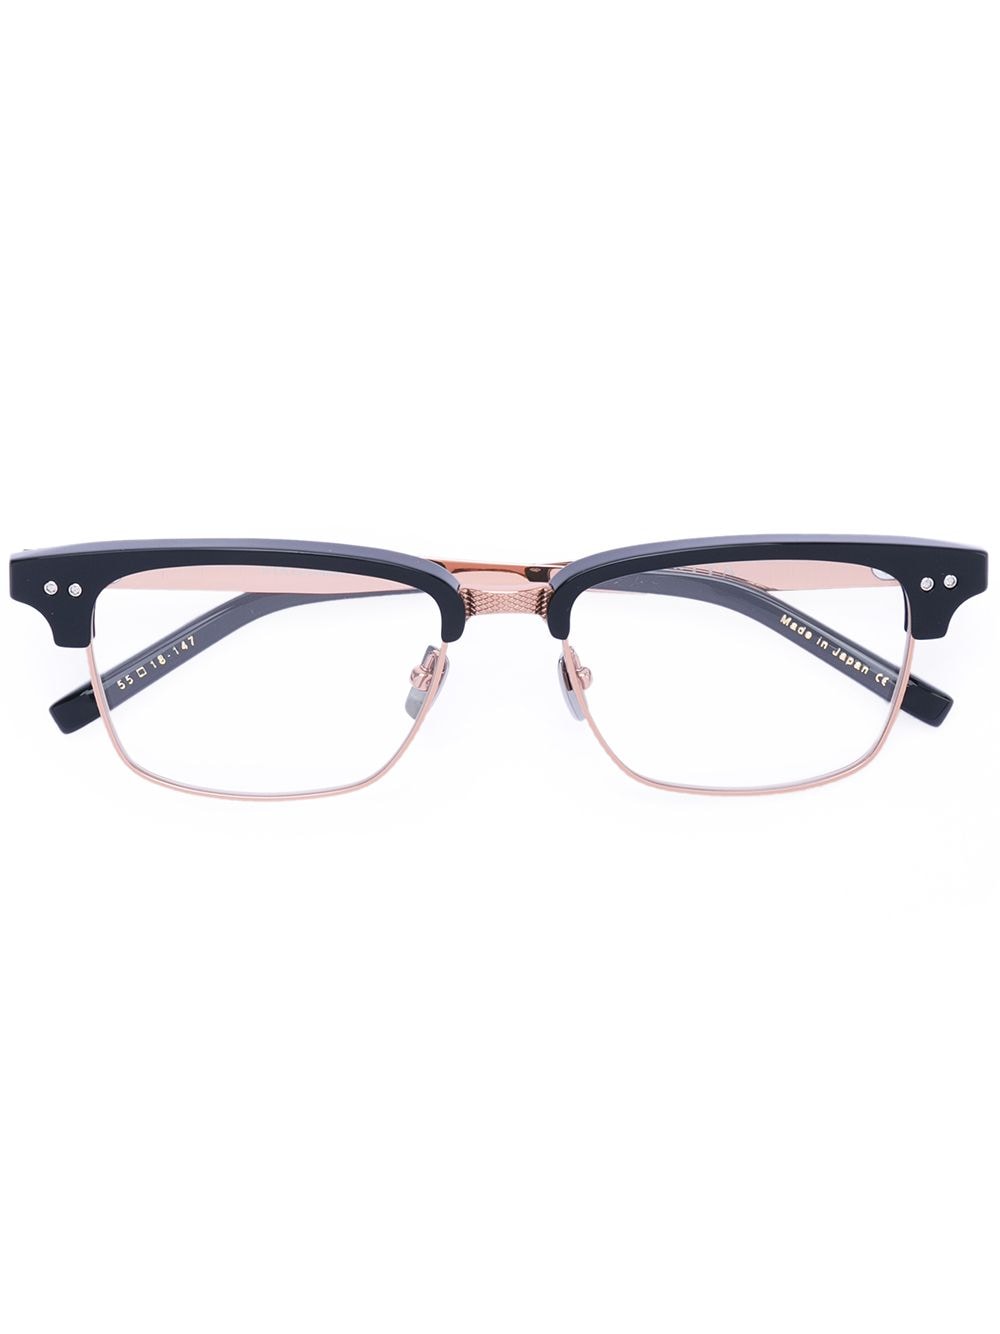 Dita Eyewear square glasses frames - Black von Dita Eyewear